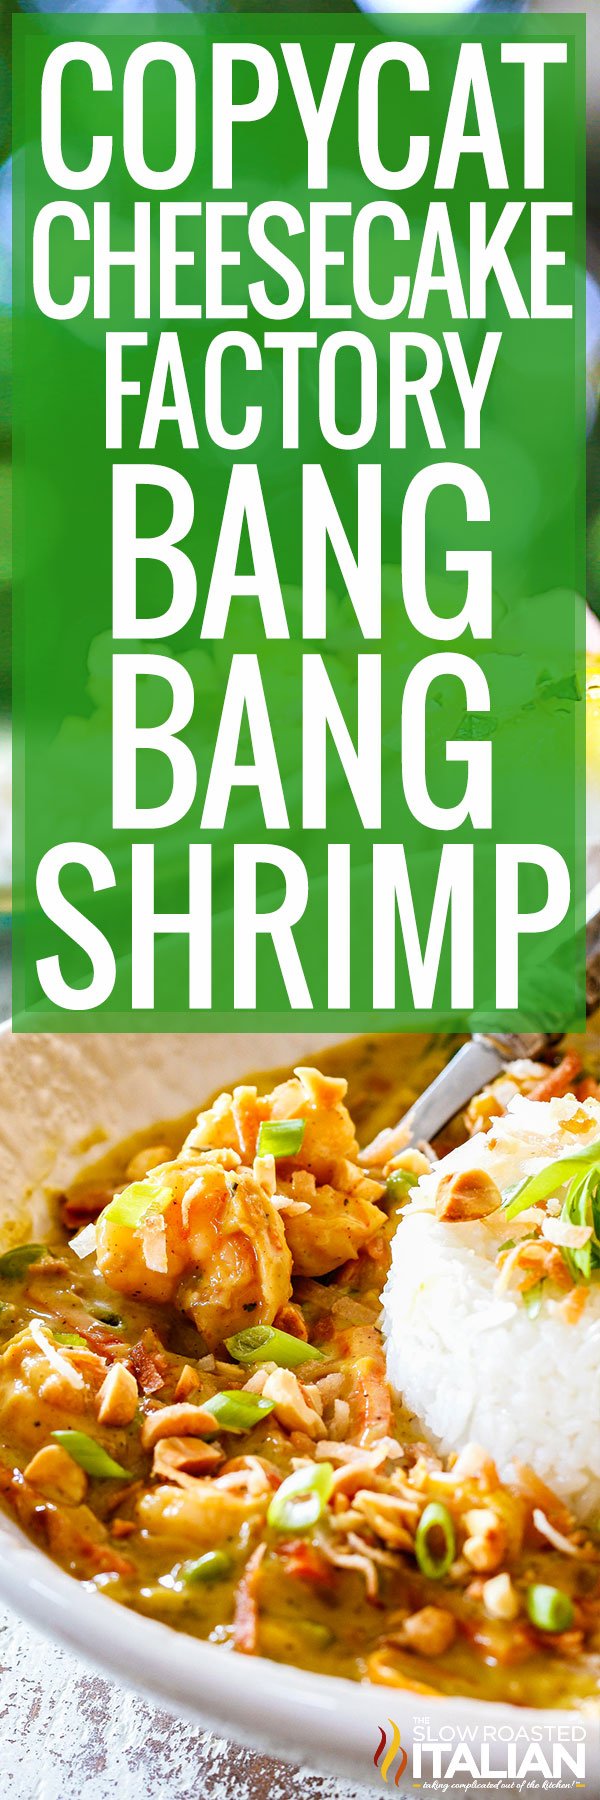 titled image (and shown): copycat cheesecake factory bang bang shrimp